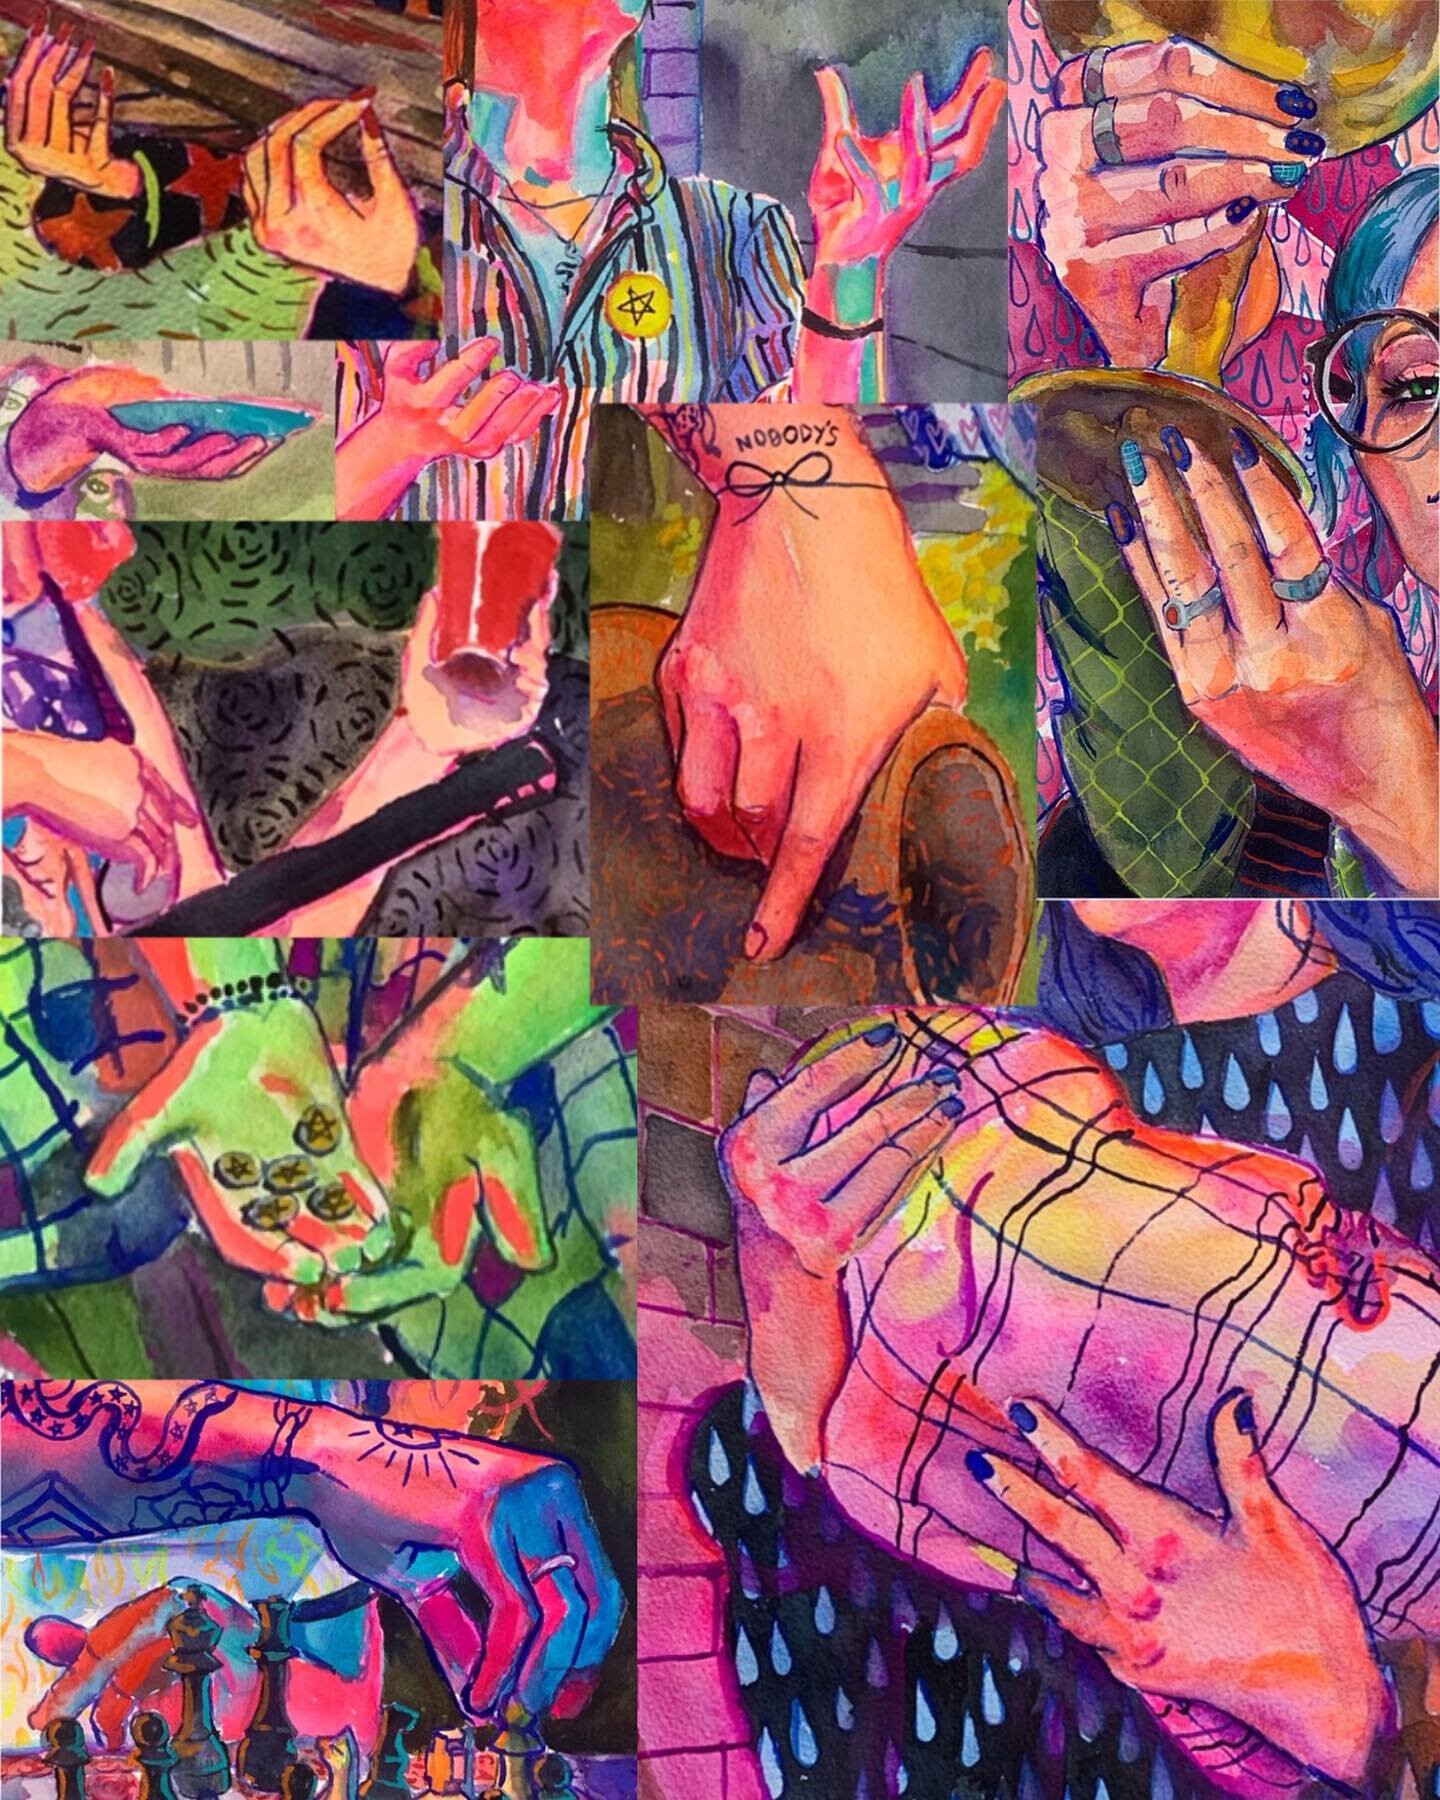 Hands  #tarot #tarotart #tarotcards #tarotdeck #watercolor #watercolorpainting #watercolourpainting #watercolorart #portrait #portraitpainting #painting #queerart #queerartist #slcart #slcartist  #artistsoninstagram #artist #artofinstagram #artofthed